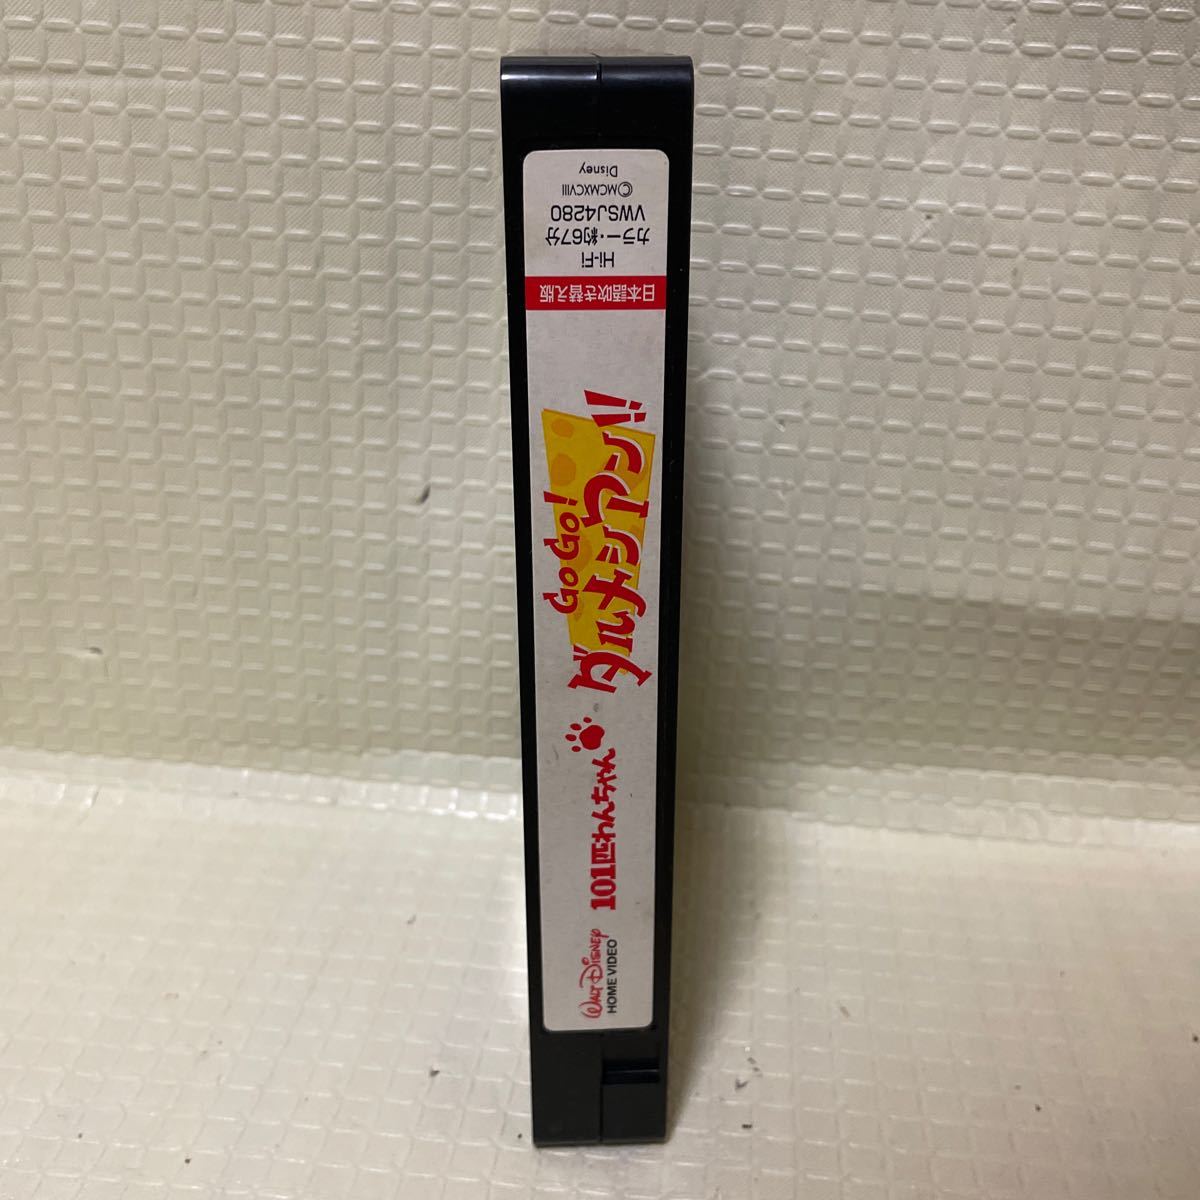 Disney 101 далматинец Go Go! далматинец!! японский язык дубликат VHS все воспроизведение подтверждено 